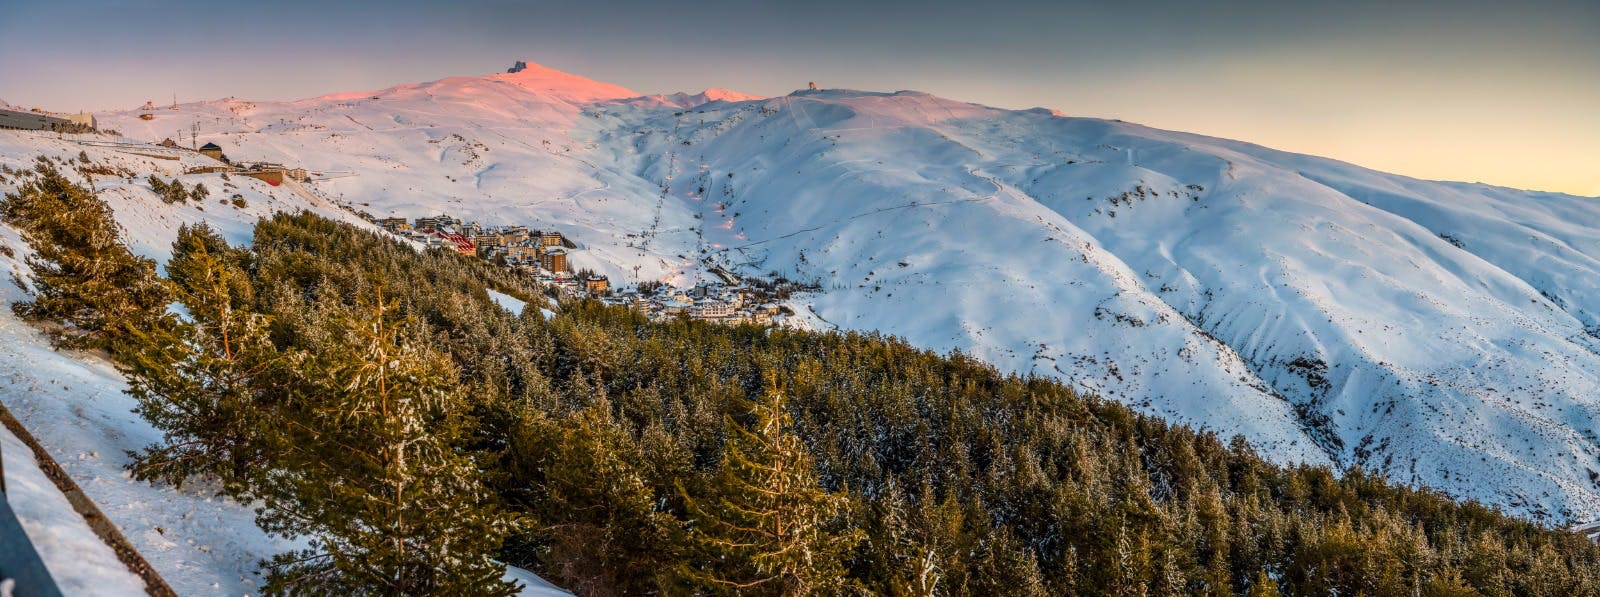 Image of PepeMarinSN9 2 in Cosentino, Official Sponsor of Sierra Nevada's Ski Resort - Cosentino